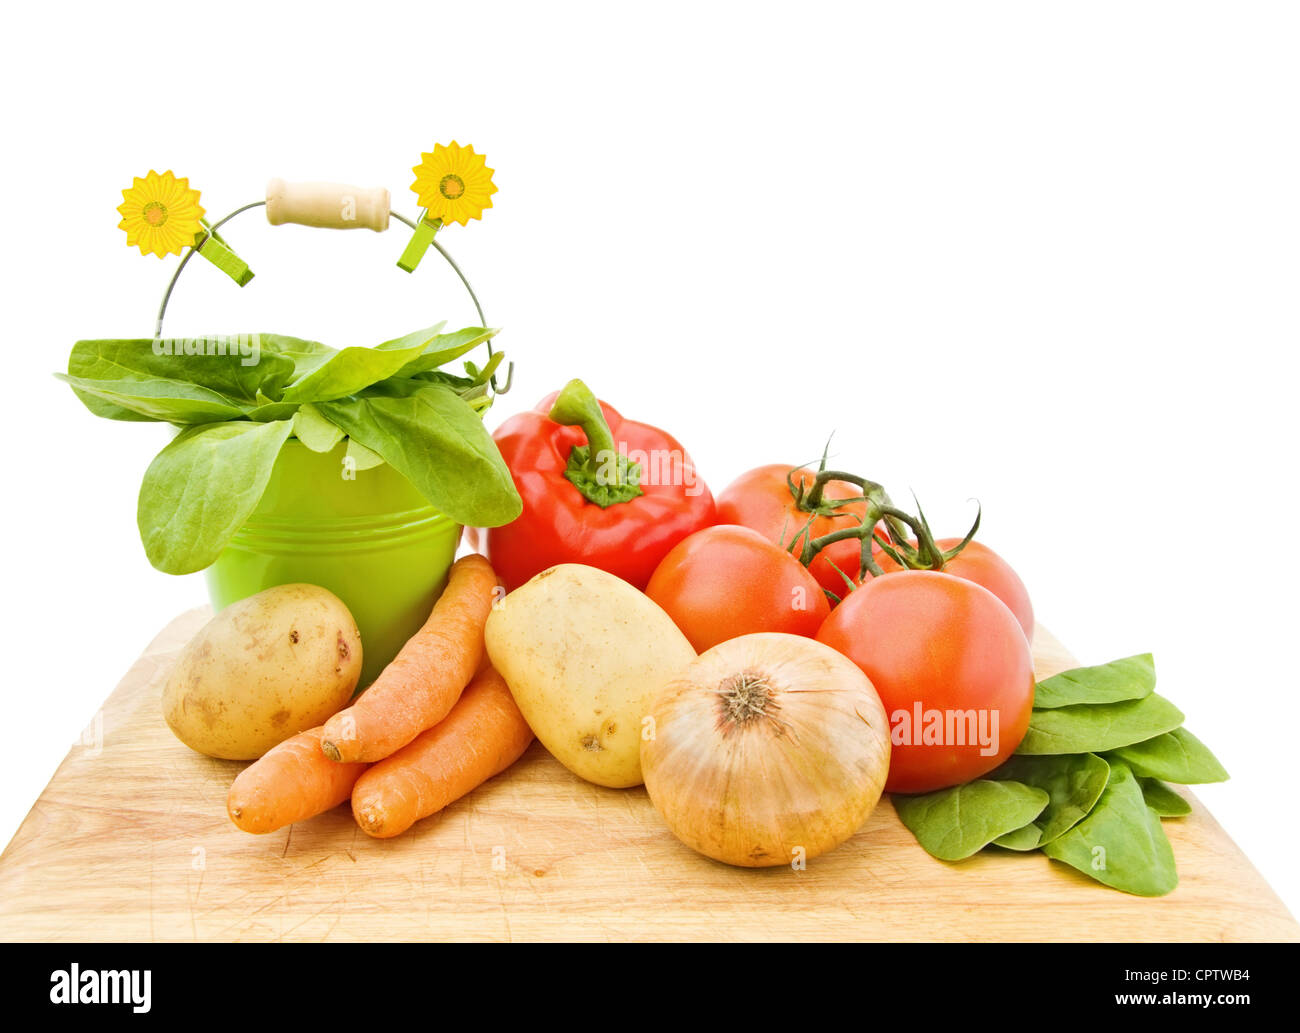 Des légumes frais du jardin - épinards, tomates, pommes de terre, carottes et poivrons rouges, sur une planche à découper en bois. Banque D'Images